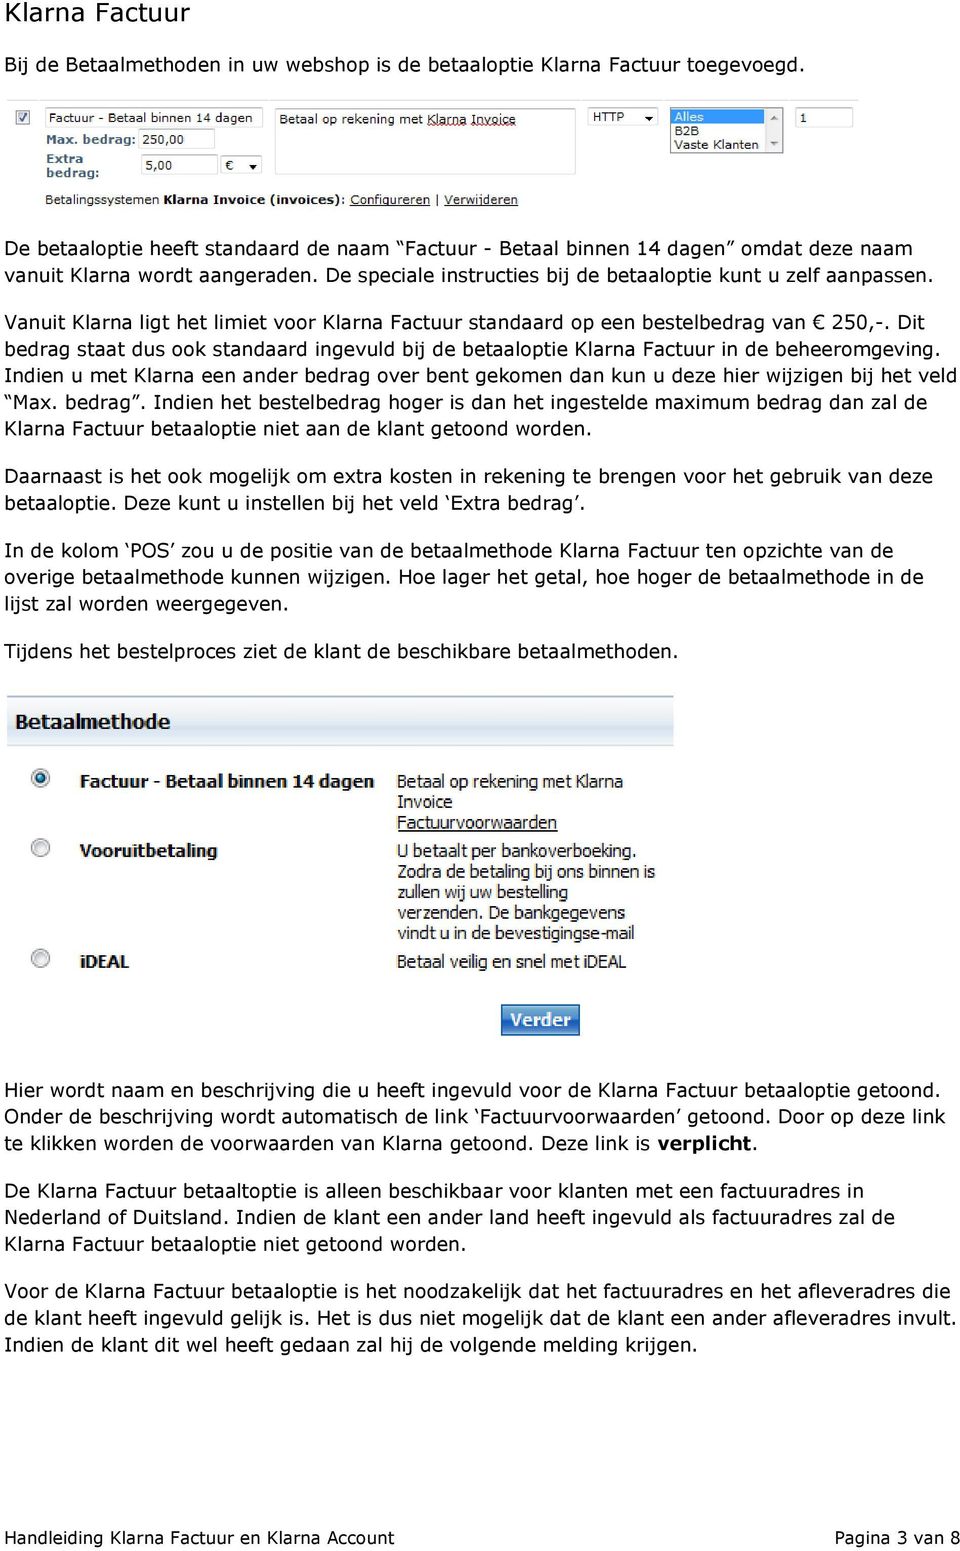 Gebruikershandleiding One Webshop Klarna en Klarna Account - PDF Gratis download